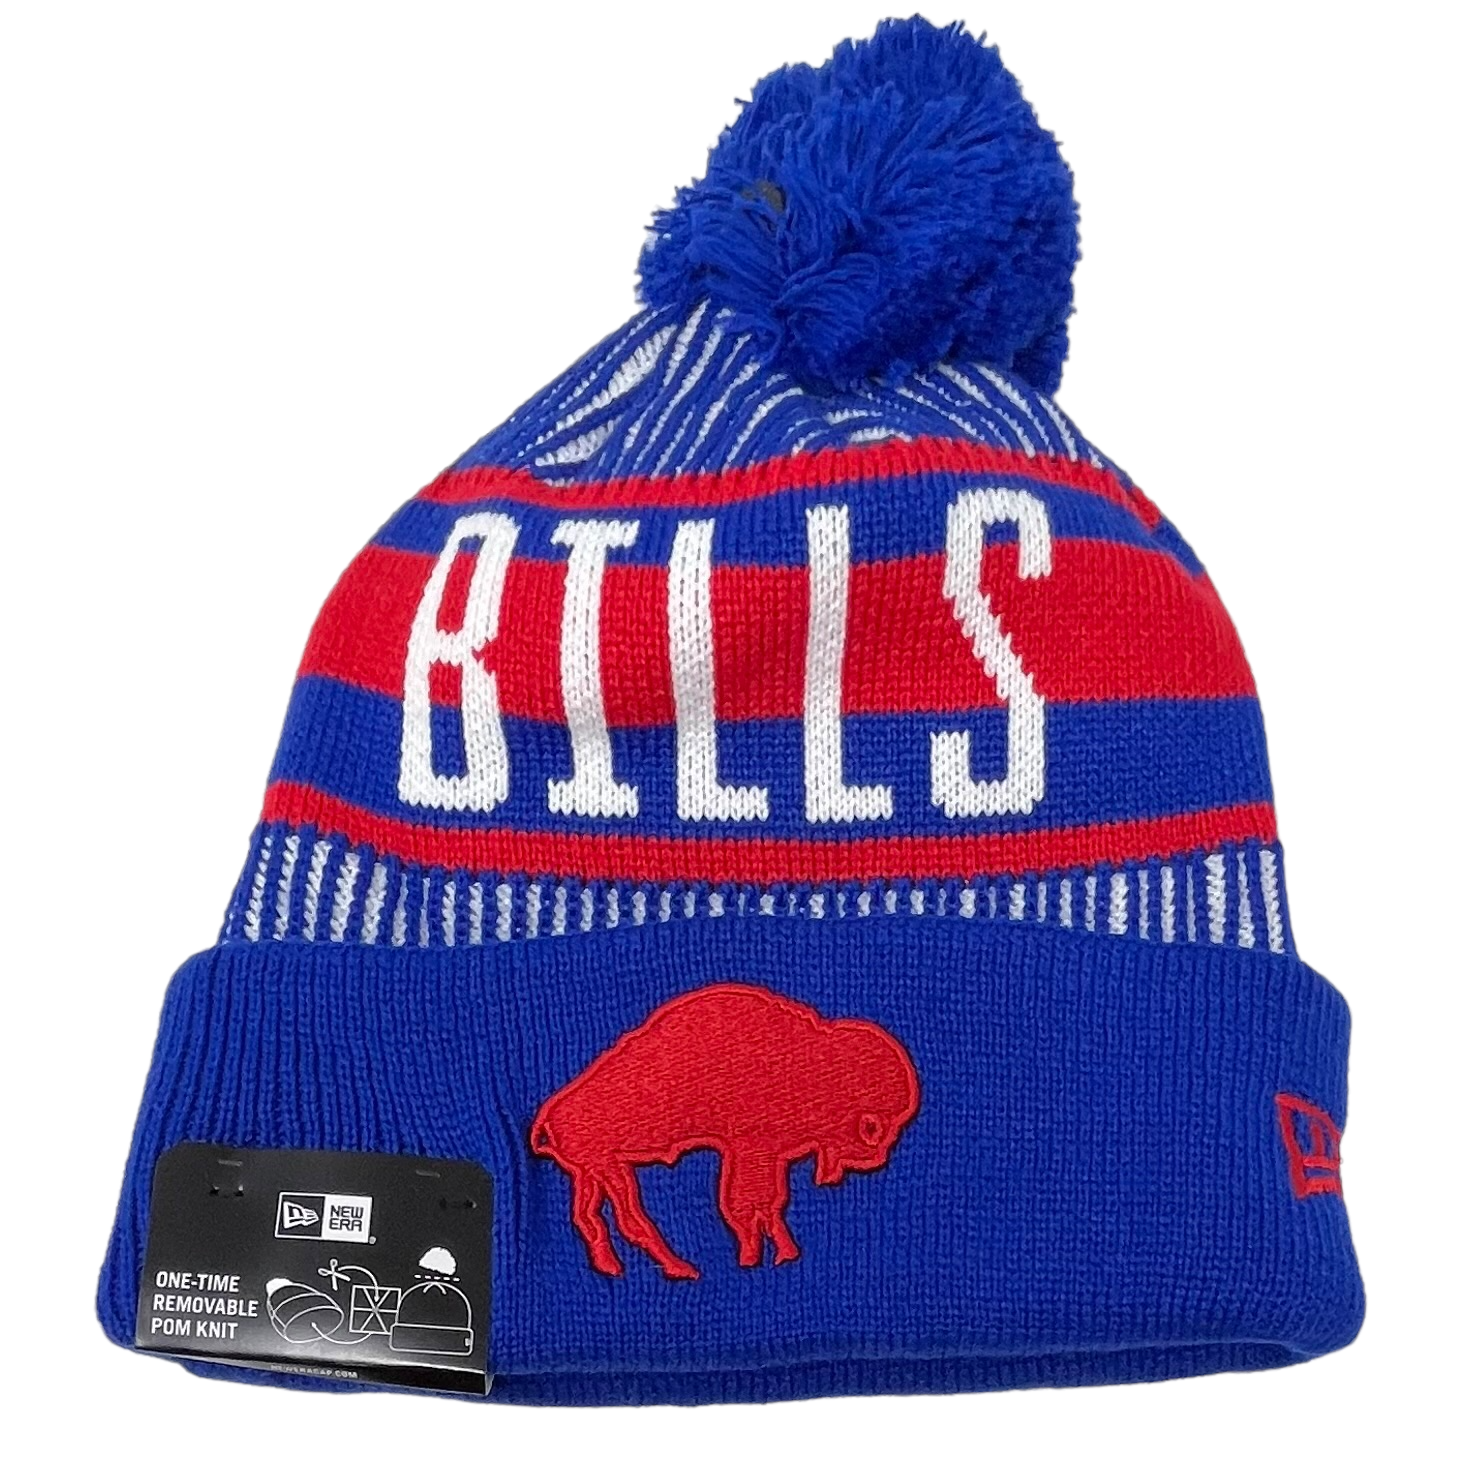 buffalo bills stocking hat